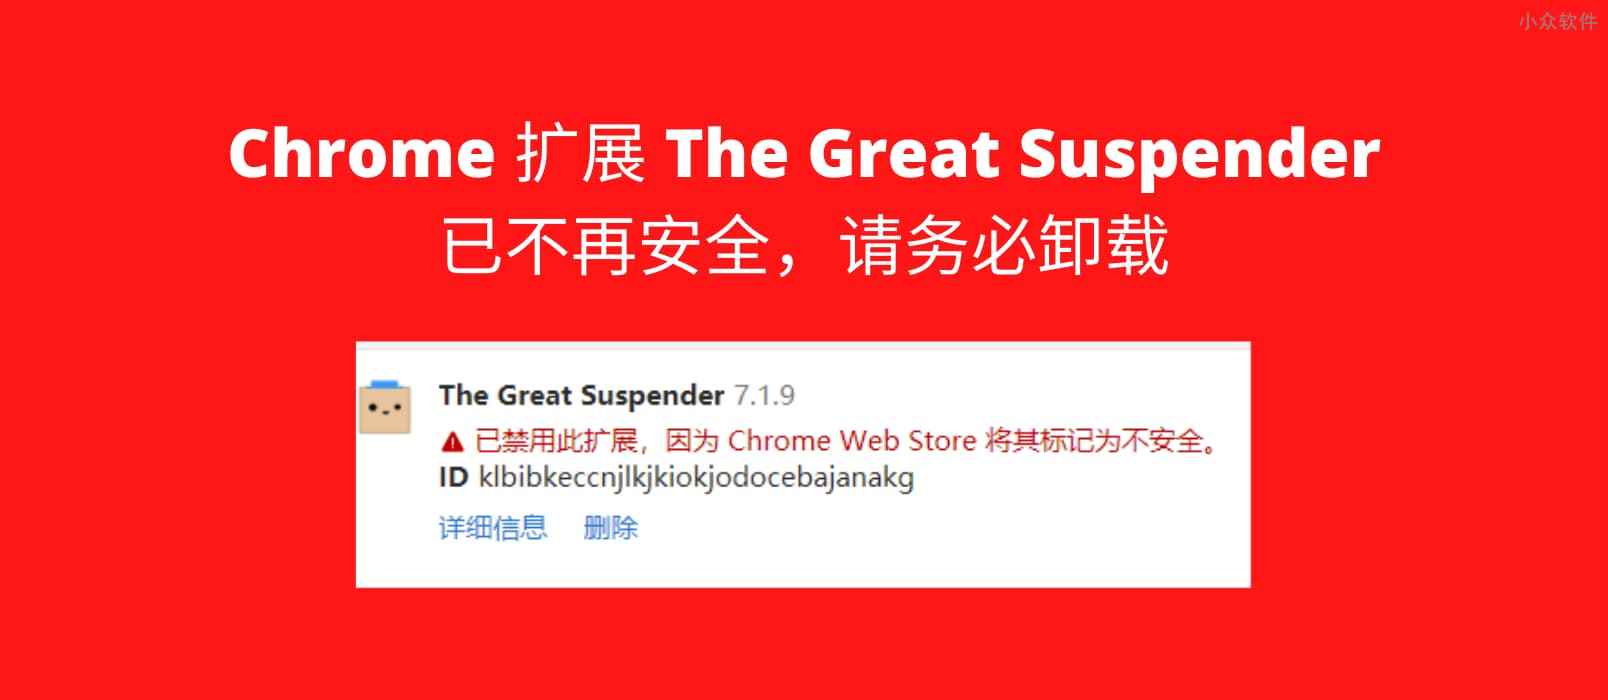 著名 Chrome 多标签页扩展 The Great Suspender 不再安全已被下架，请务必卸载